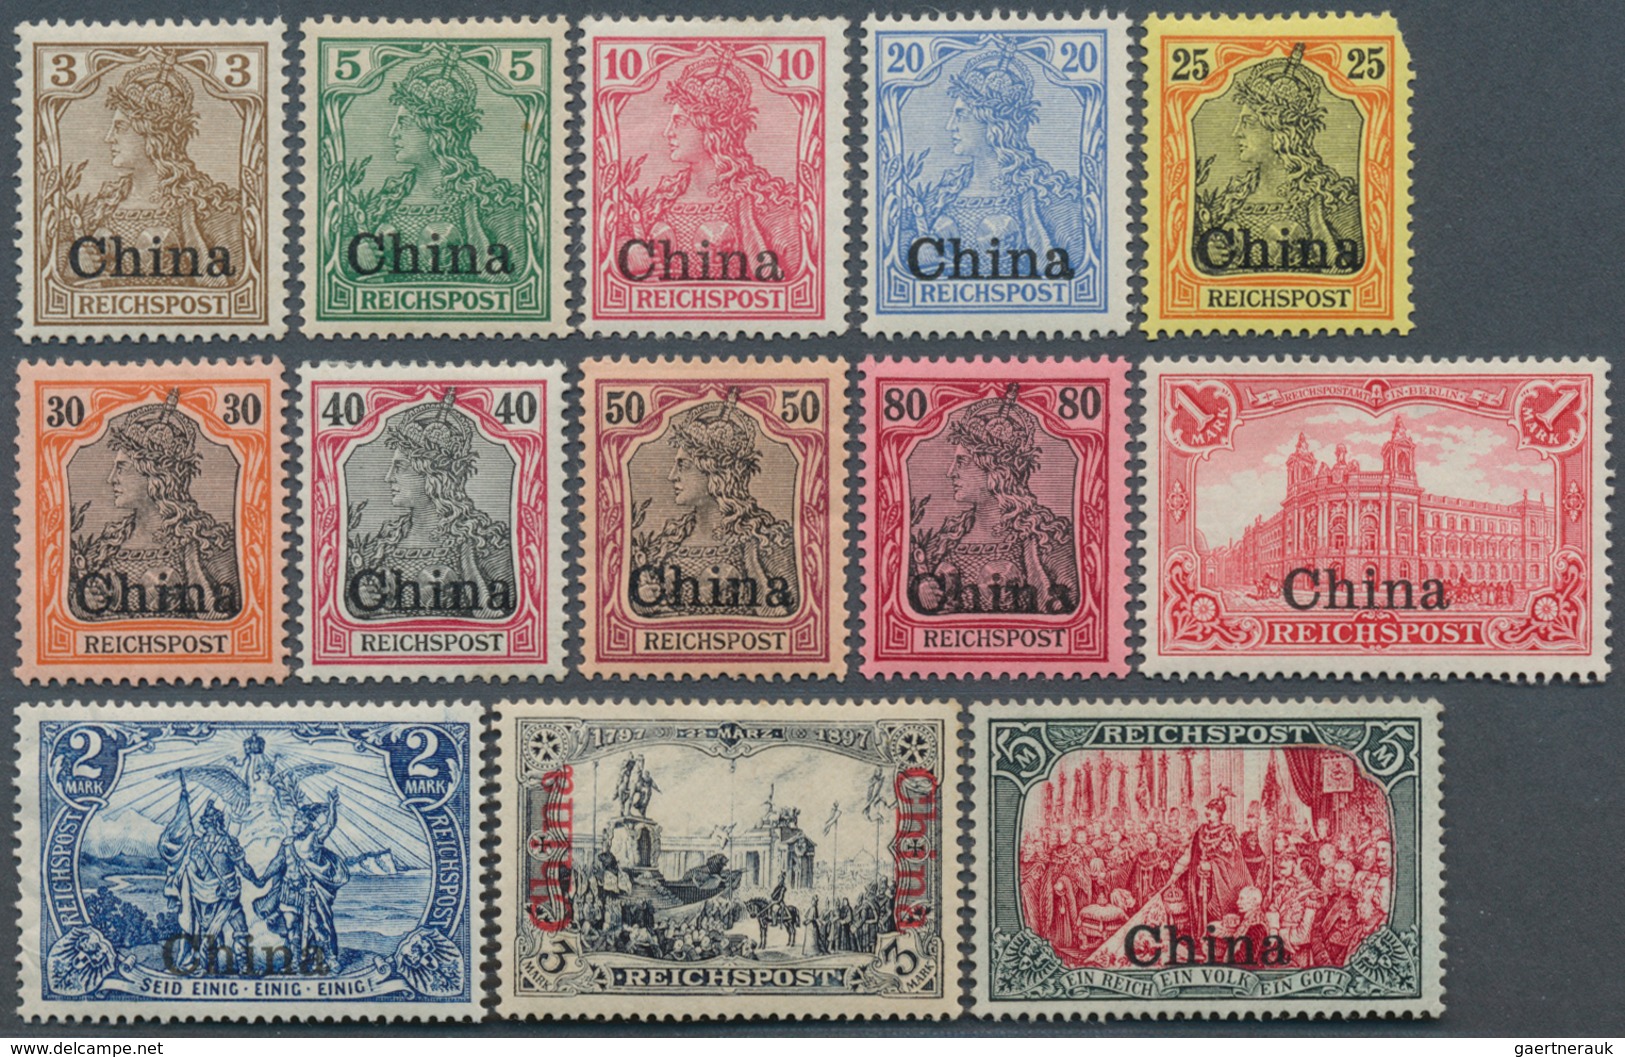 Deutsche Post In China: 1901, Reichspost, Kpl. Satz, 25 Pf Wert Eckfehler, Ungebraucht - China (offices)